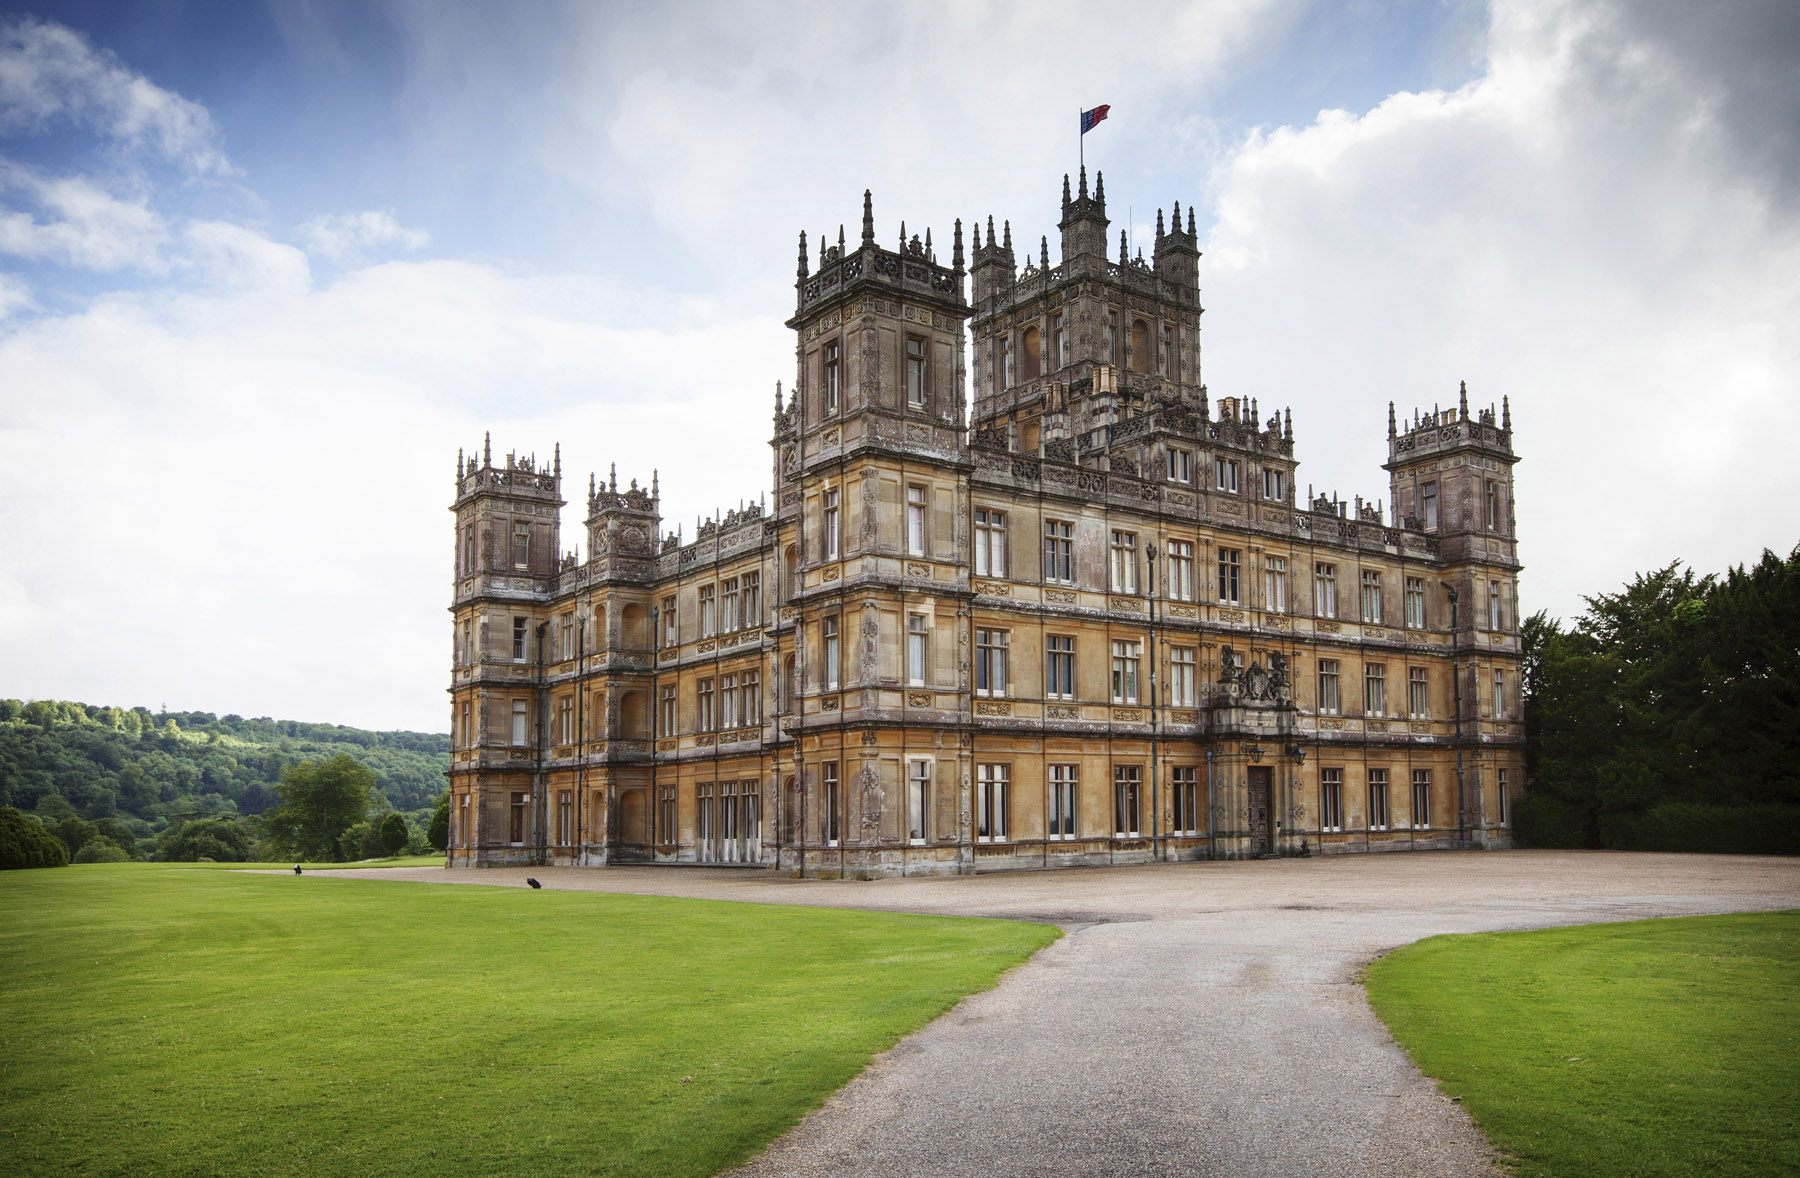 Bezoek het echte Downton Abbey: Highclere Castle en de andere locaties